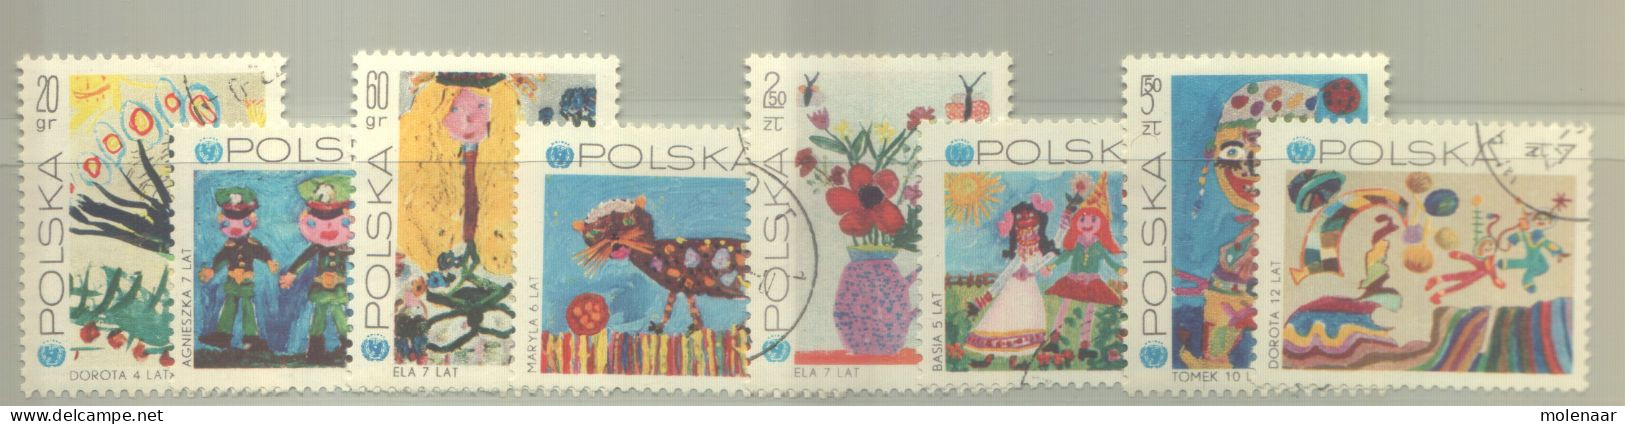 Postzegels > Europa > Polen > 1944-.... Republiek > 1981-90 > Gebruikt 2075-2082 (12193) - Gebraucht